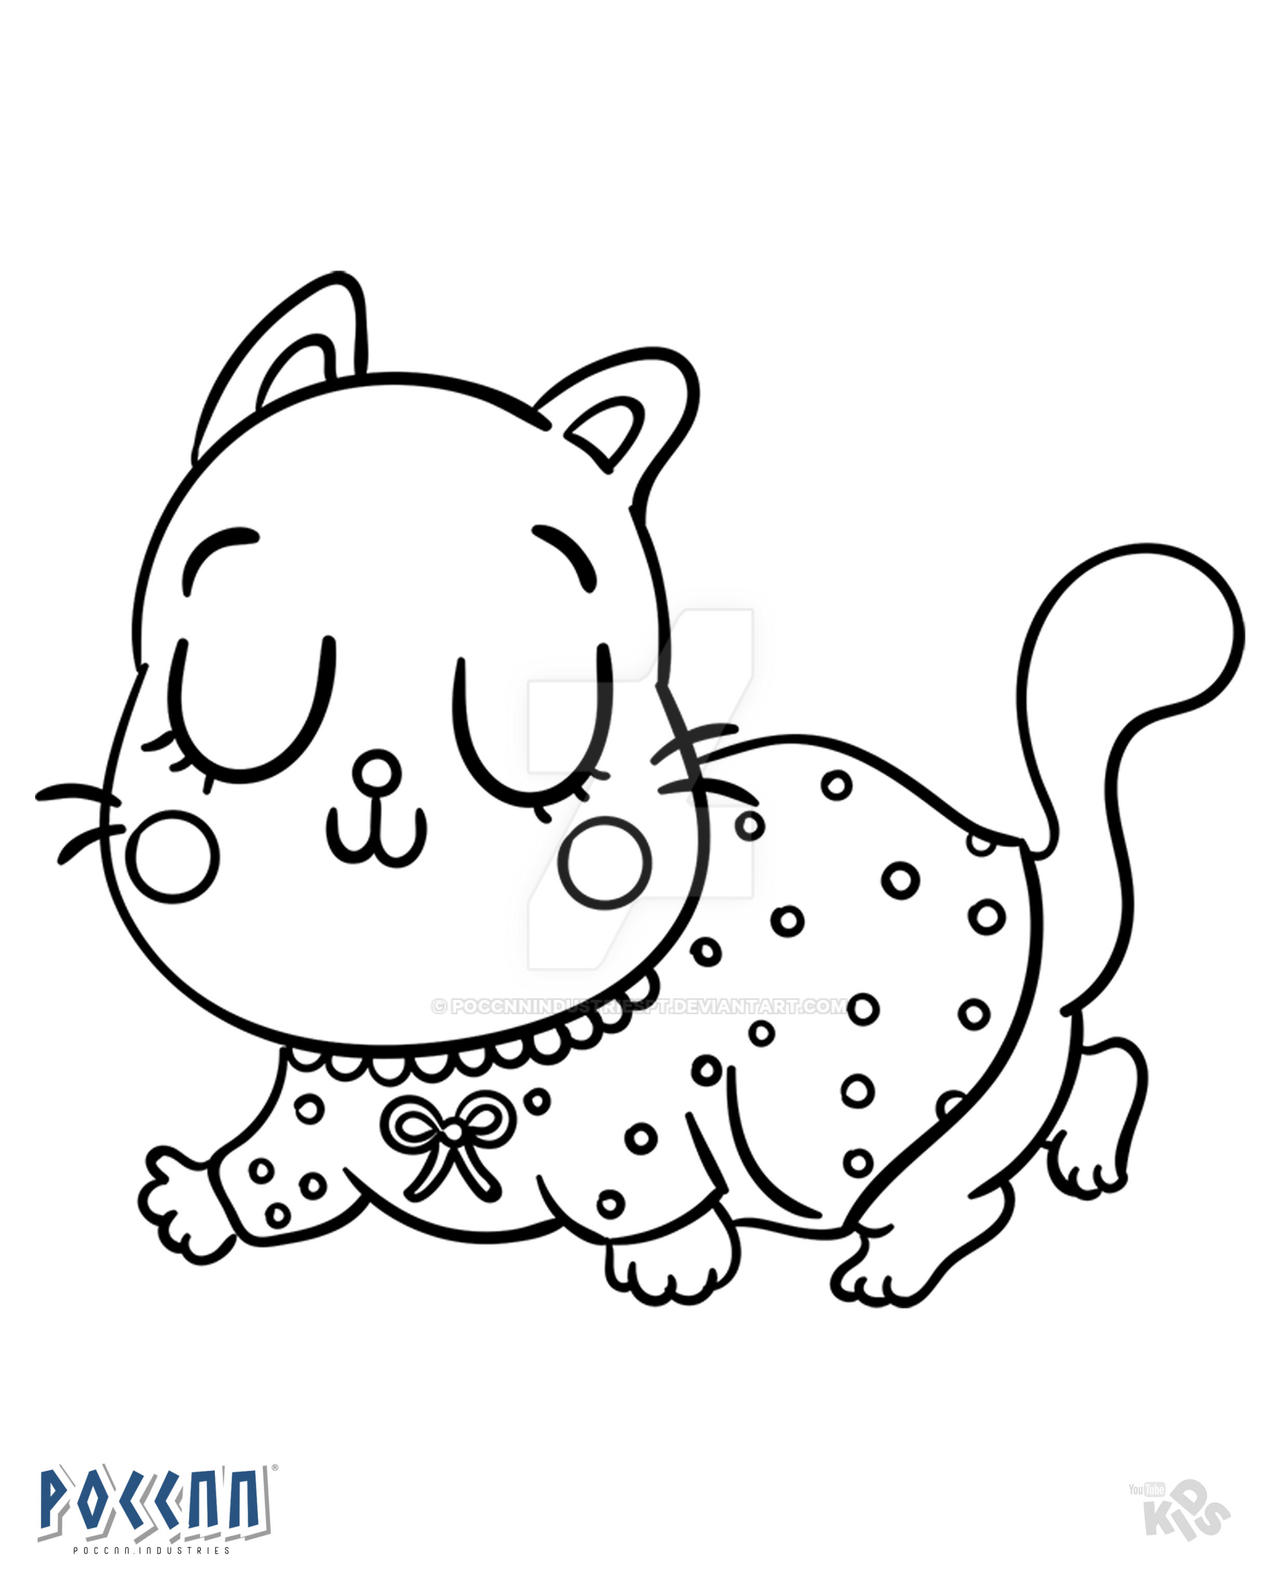 Como Desenhar um gatinho Kawaii 🐈 